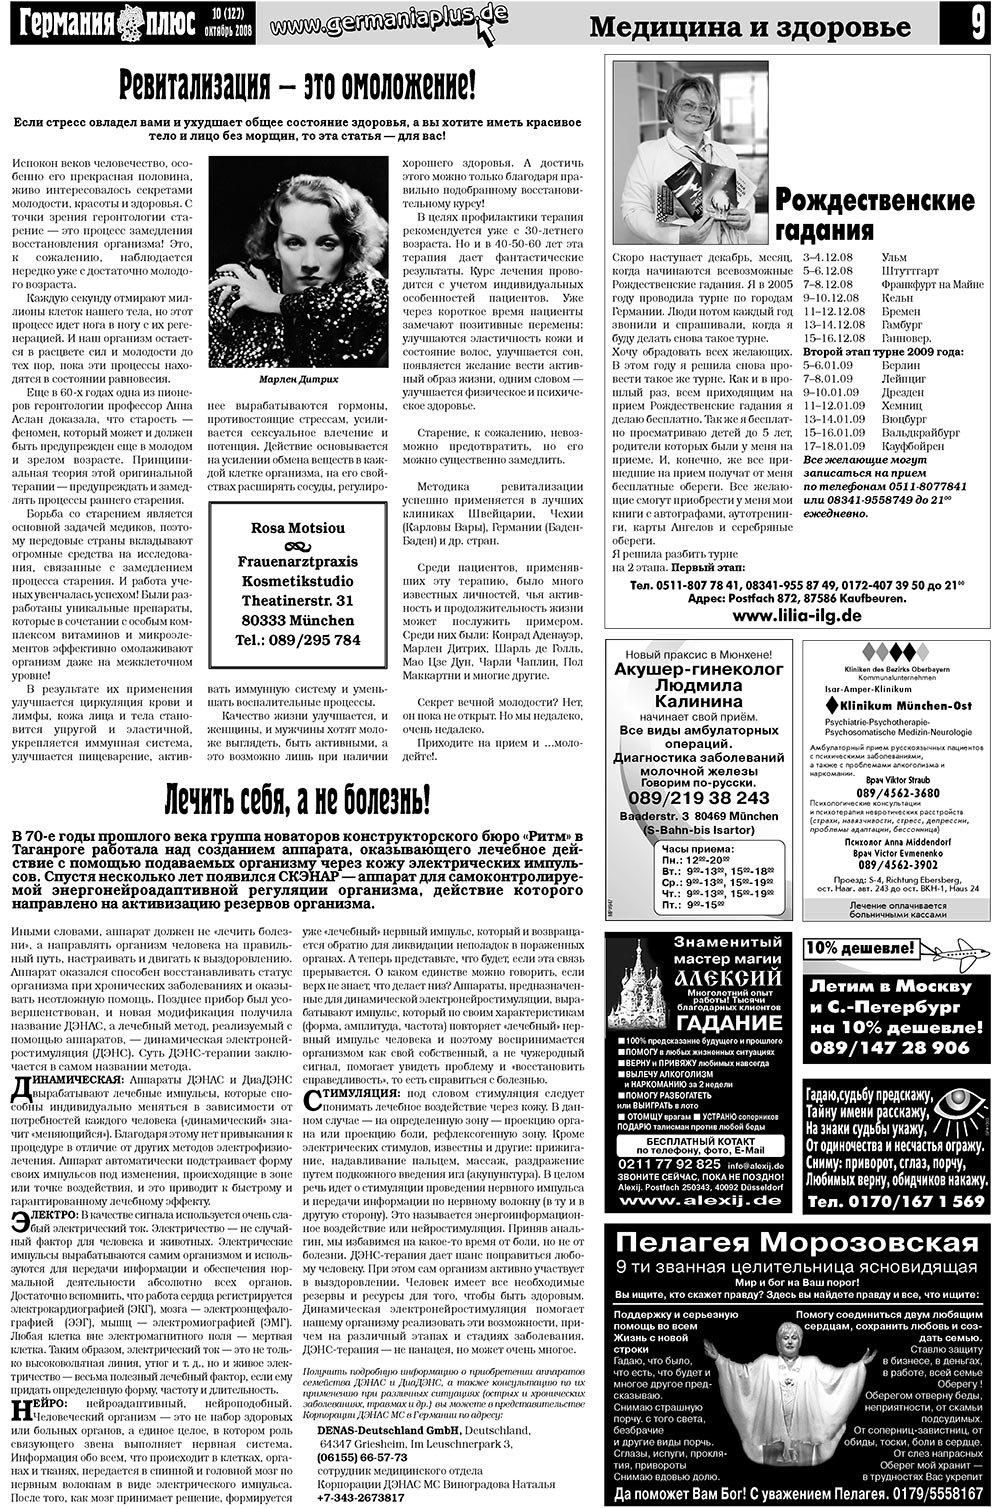 Германия плюс (газета). 2008 год, номер 10, стр. 13